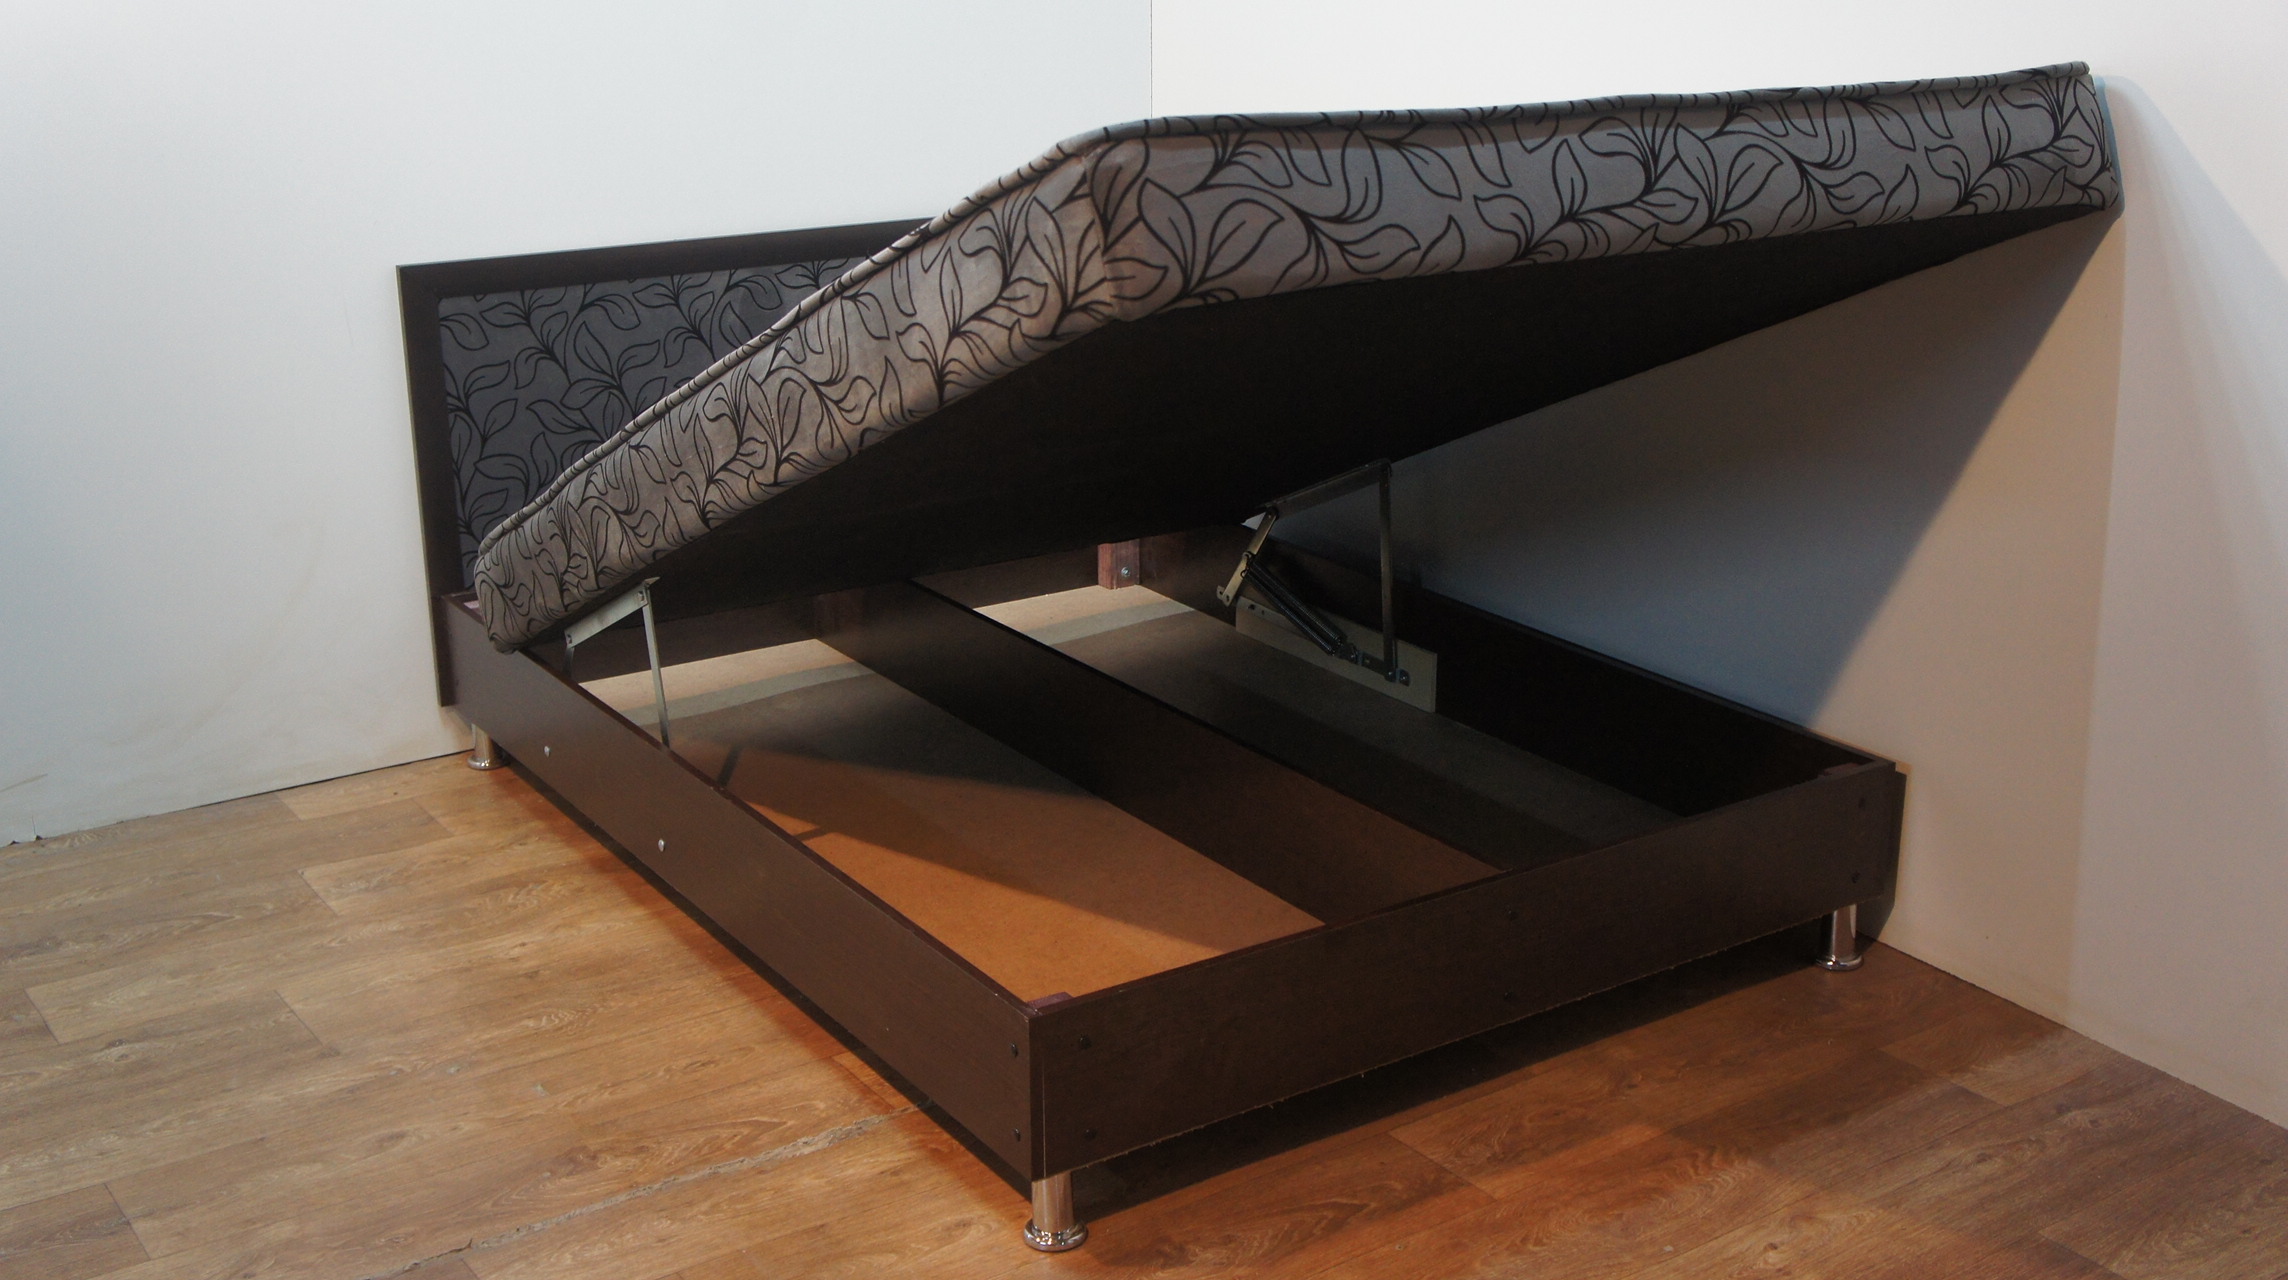 Кровать с матрасом и подъёмным механизмом Эдем (140 см)